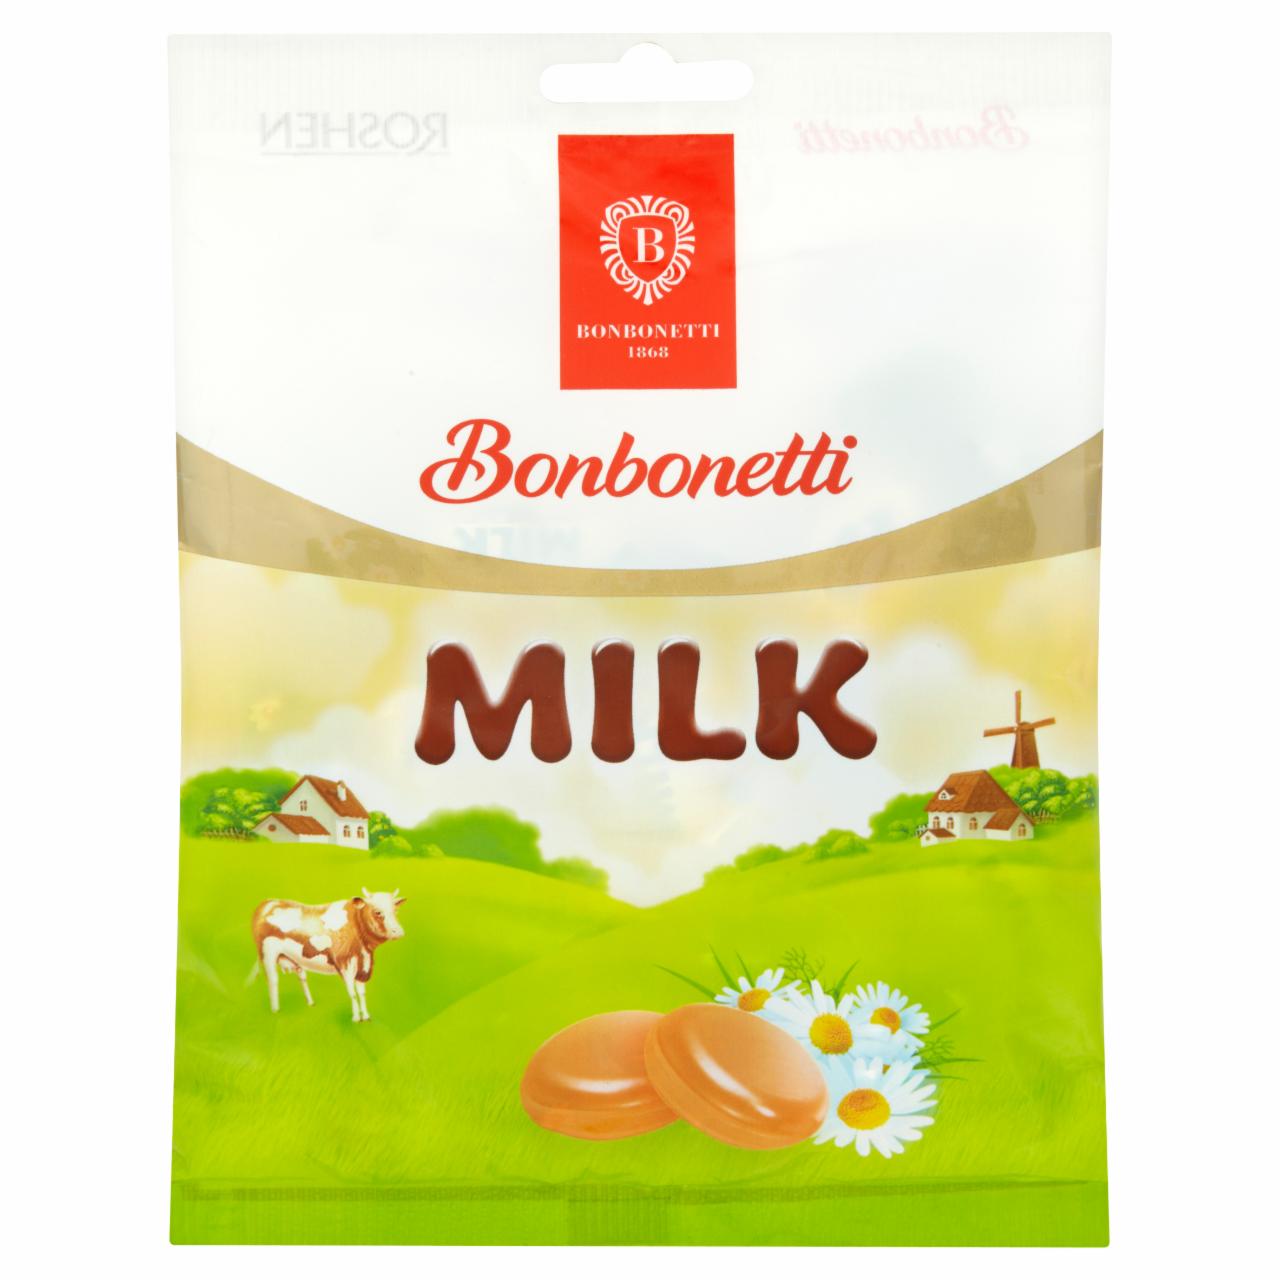 Képek - Bonbonetti Milk tejkrémmel töltött cukorka 80 g